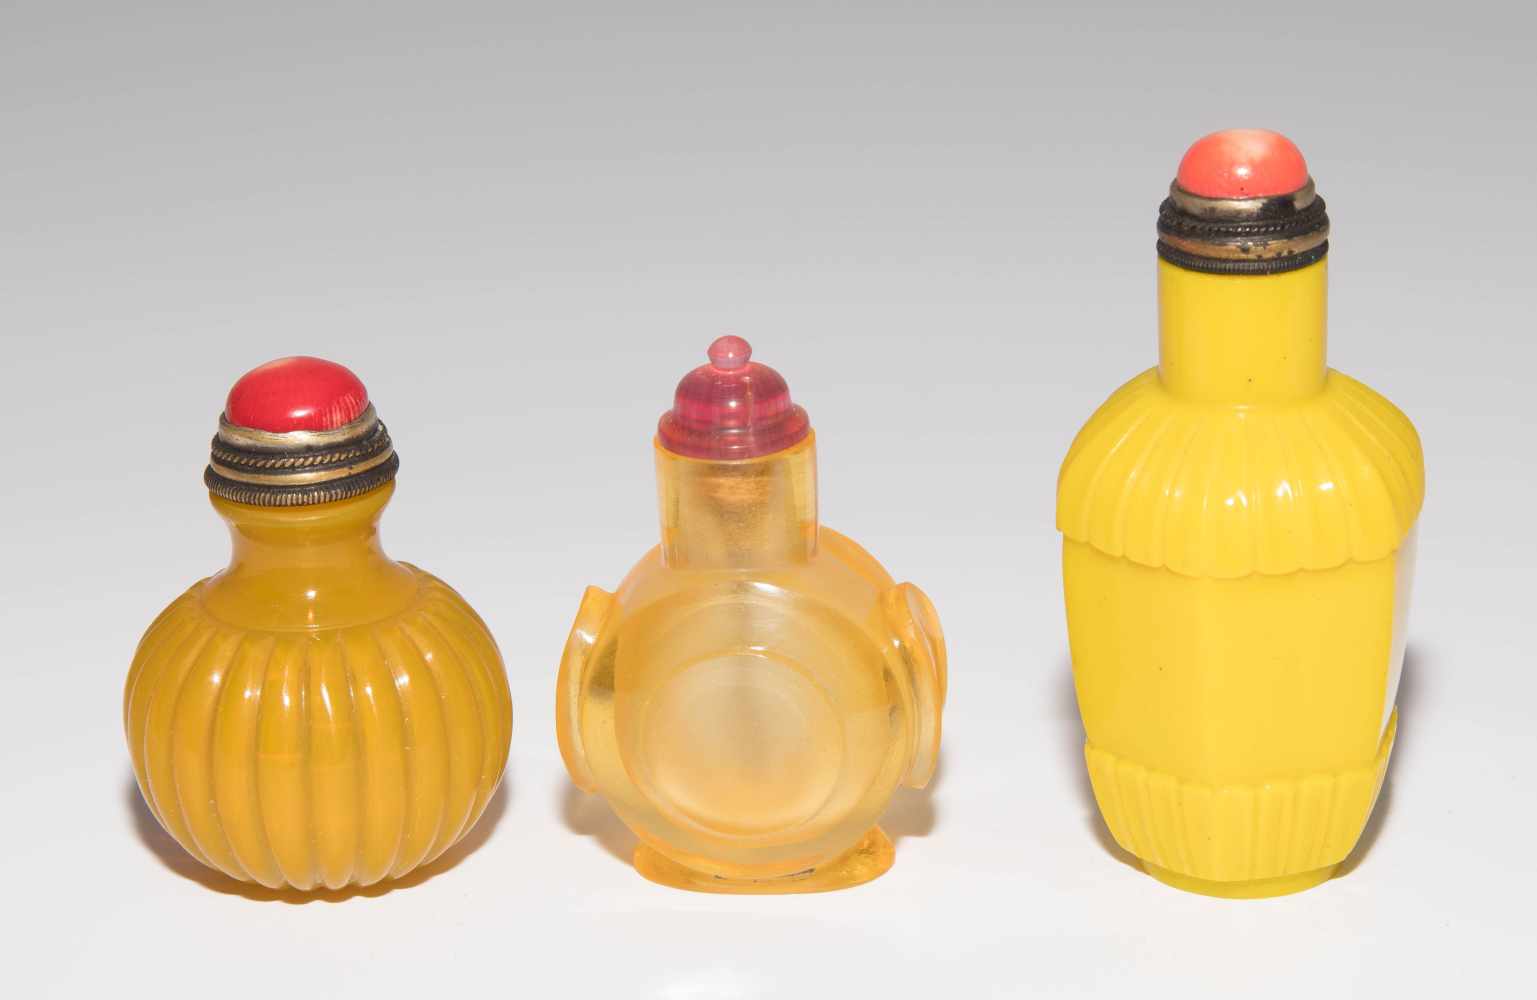 7 Glas Snuff BottlesChina. Halbtransparentes bis opakes Glas in verschiedenen Gelbtönen. H 5–8 cm. - Image 20 of 21